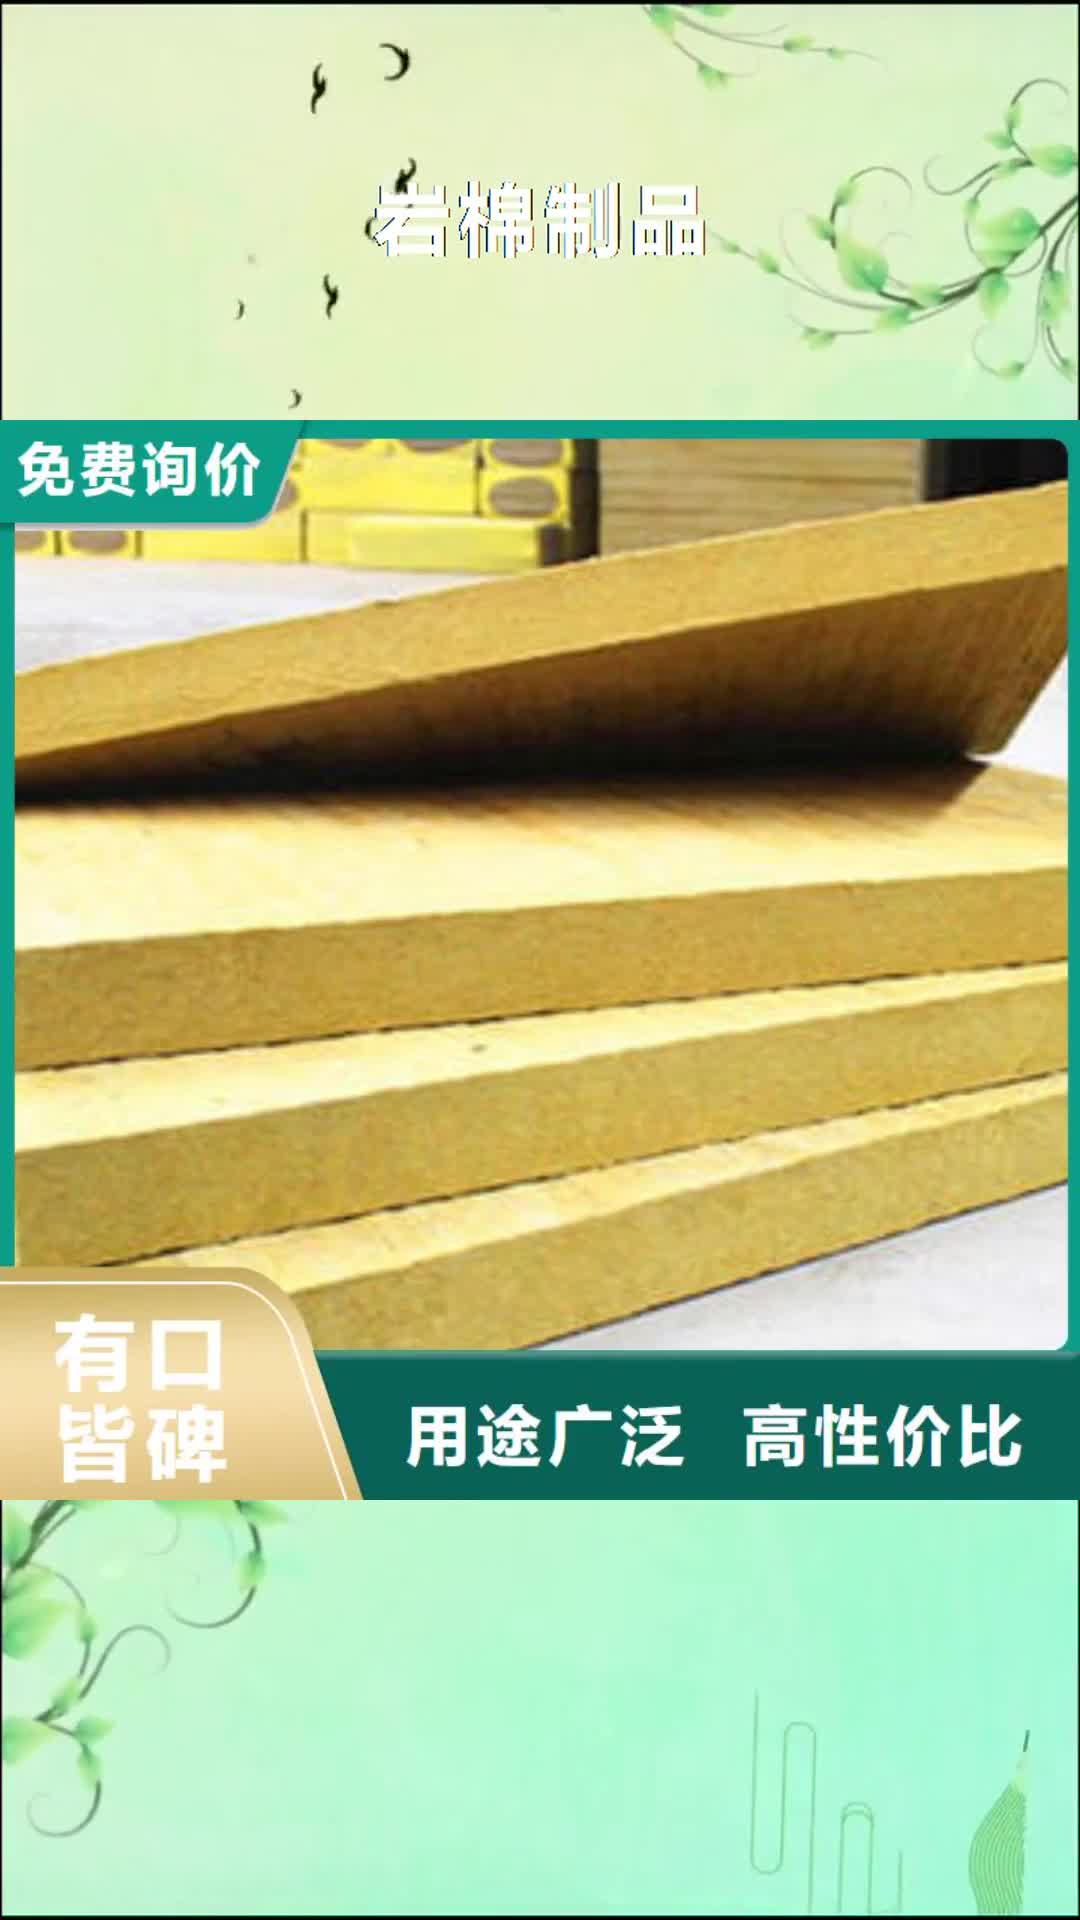 平顶山【岩棉制品】-岩棉板专业生产制造厂